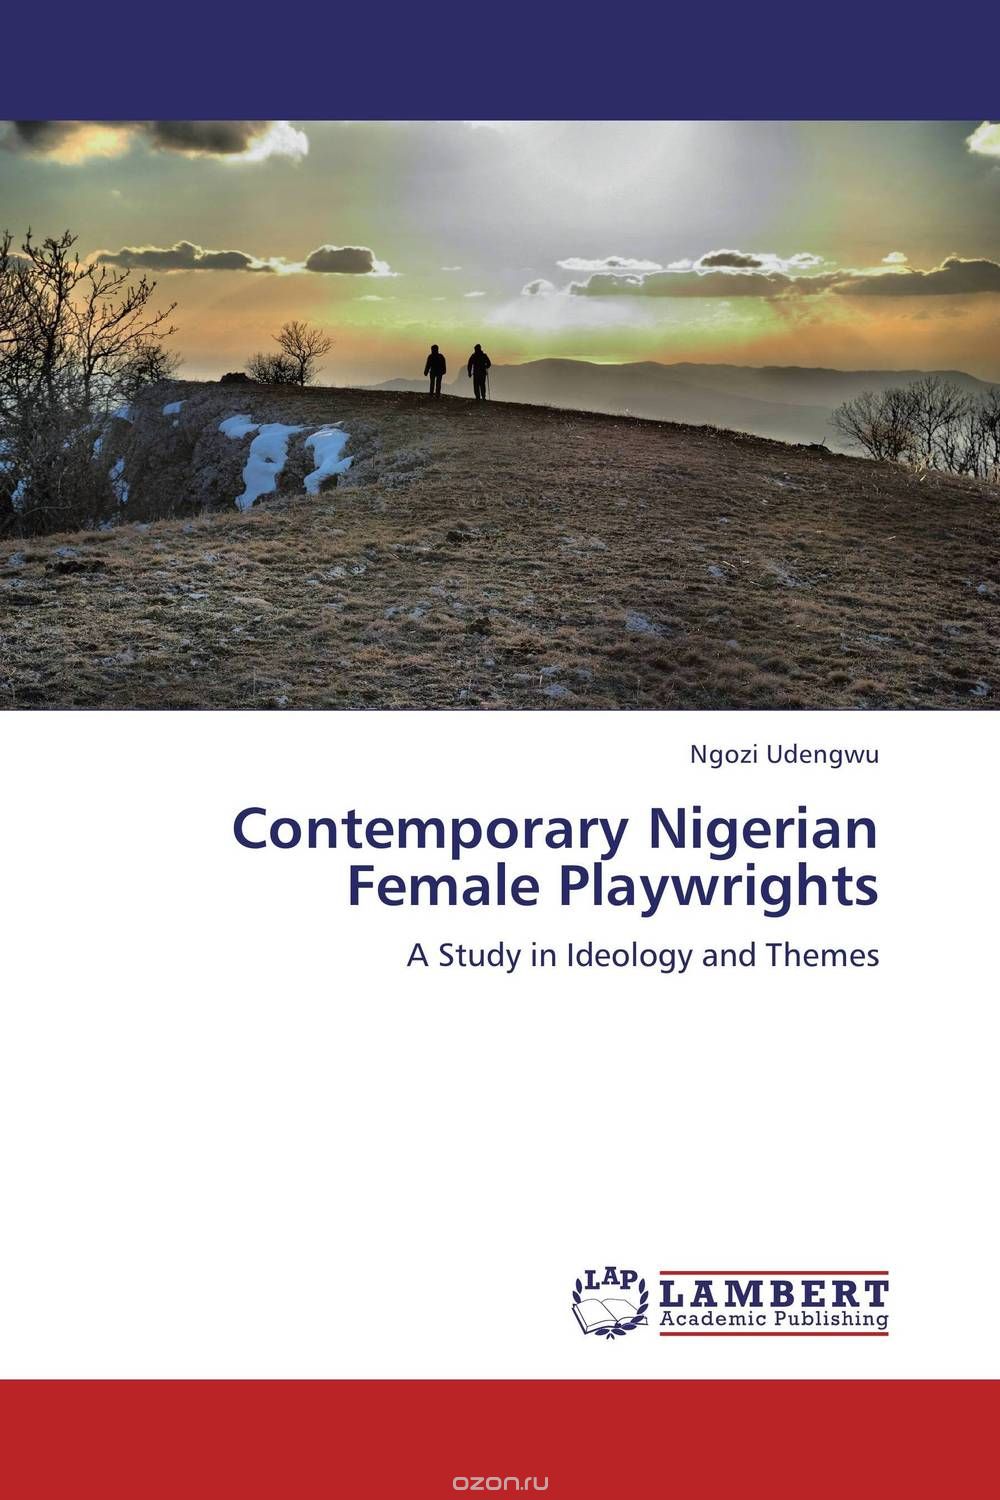 Скачать книгу "Contemporary Nigerian Female Playwrights"